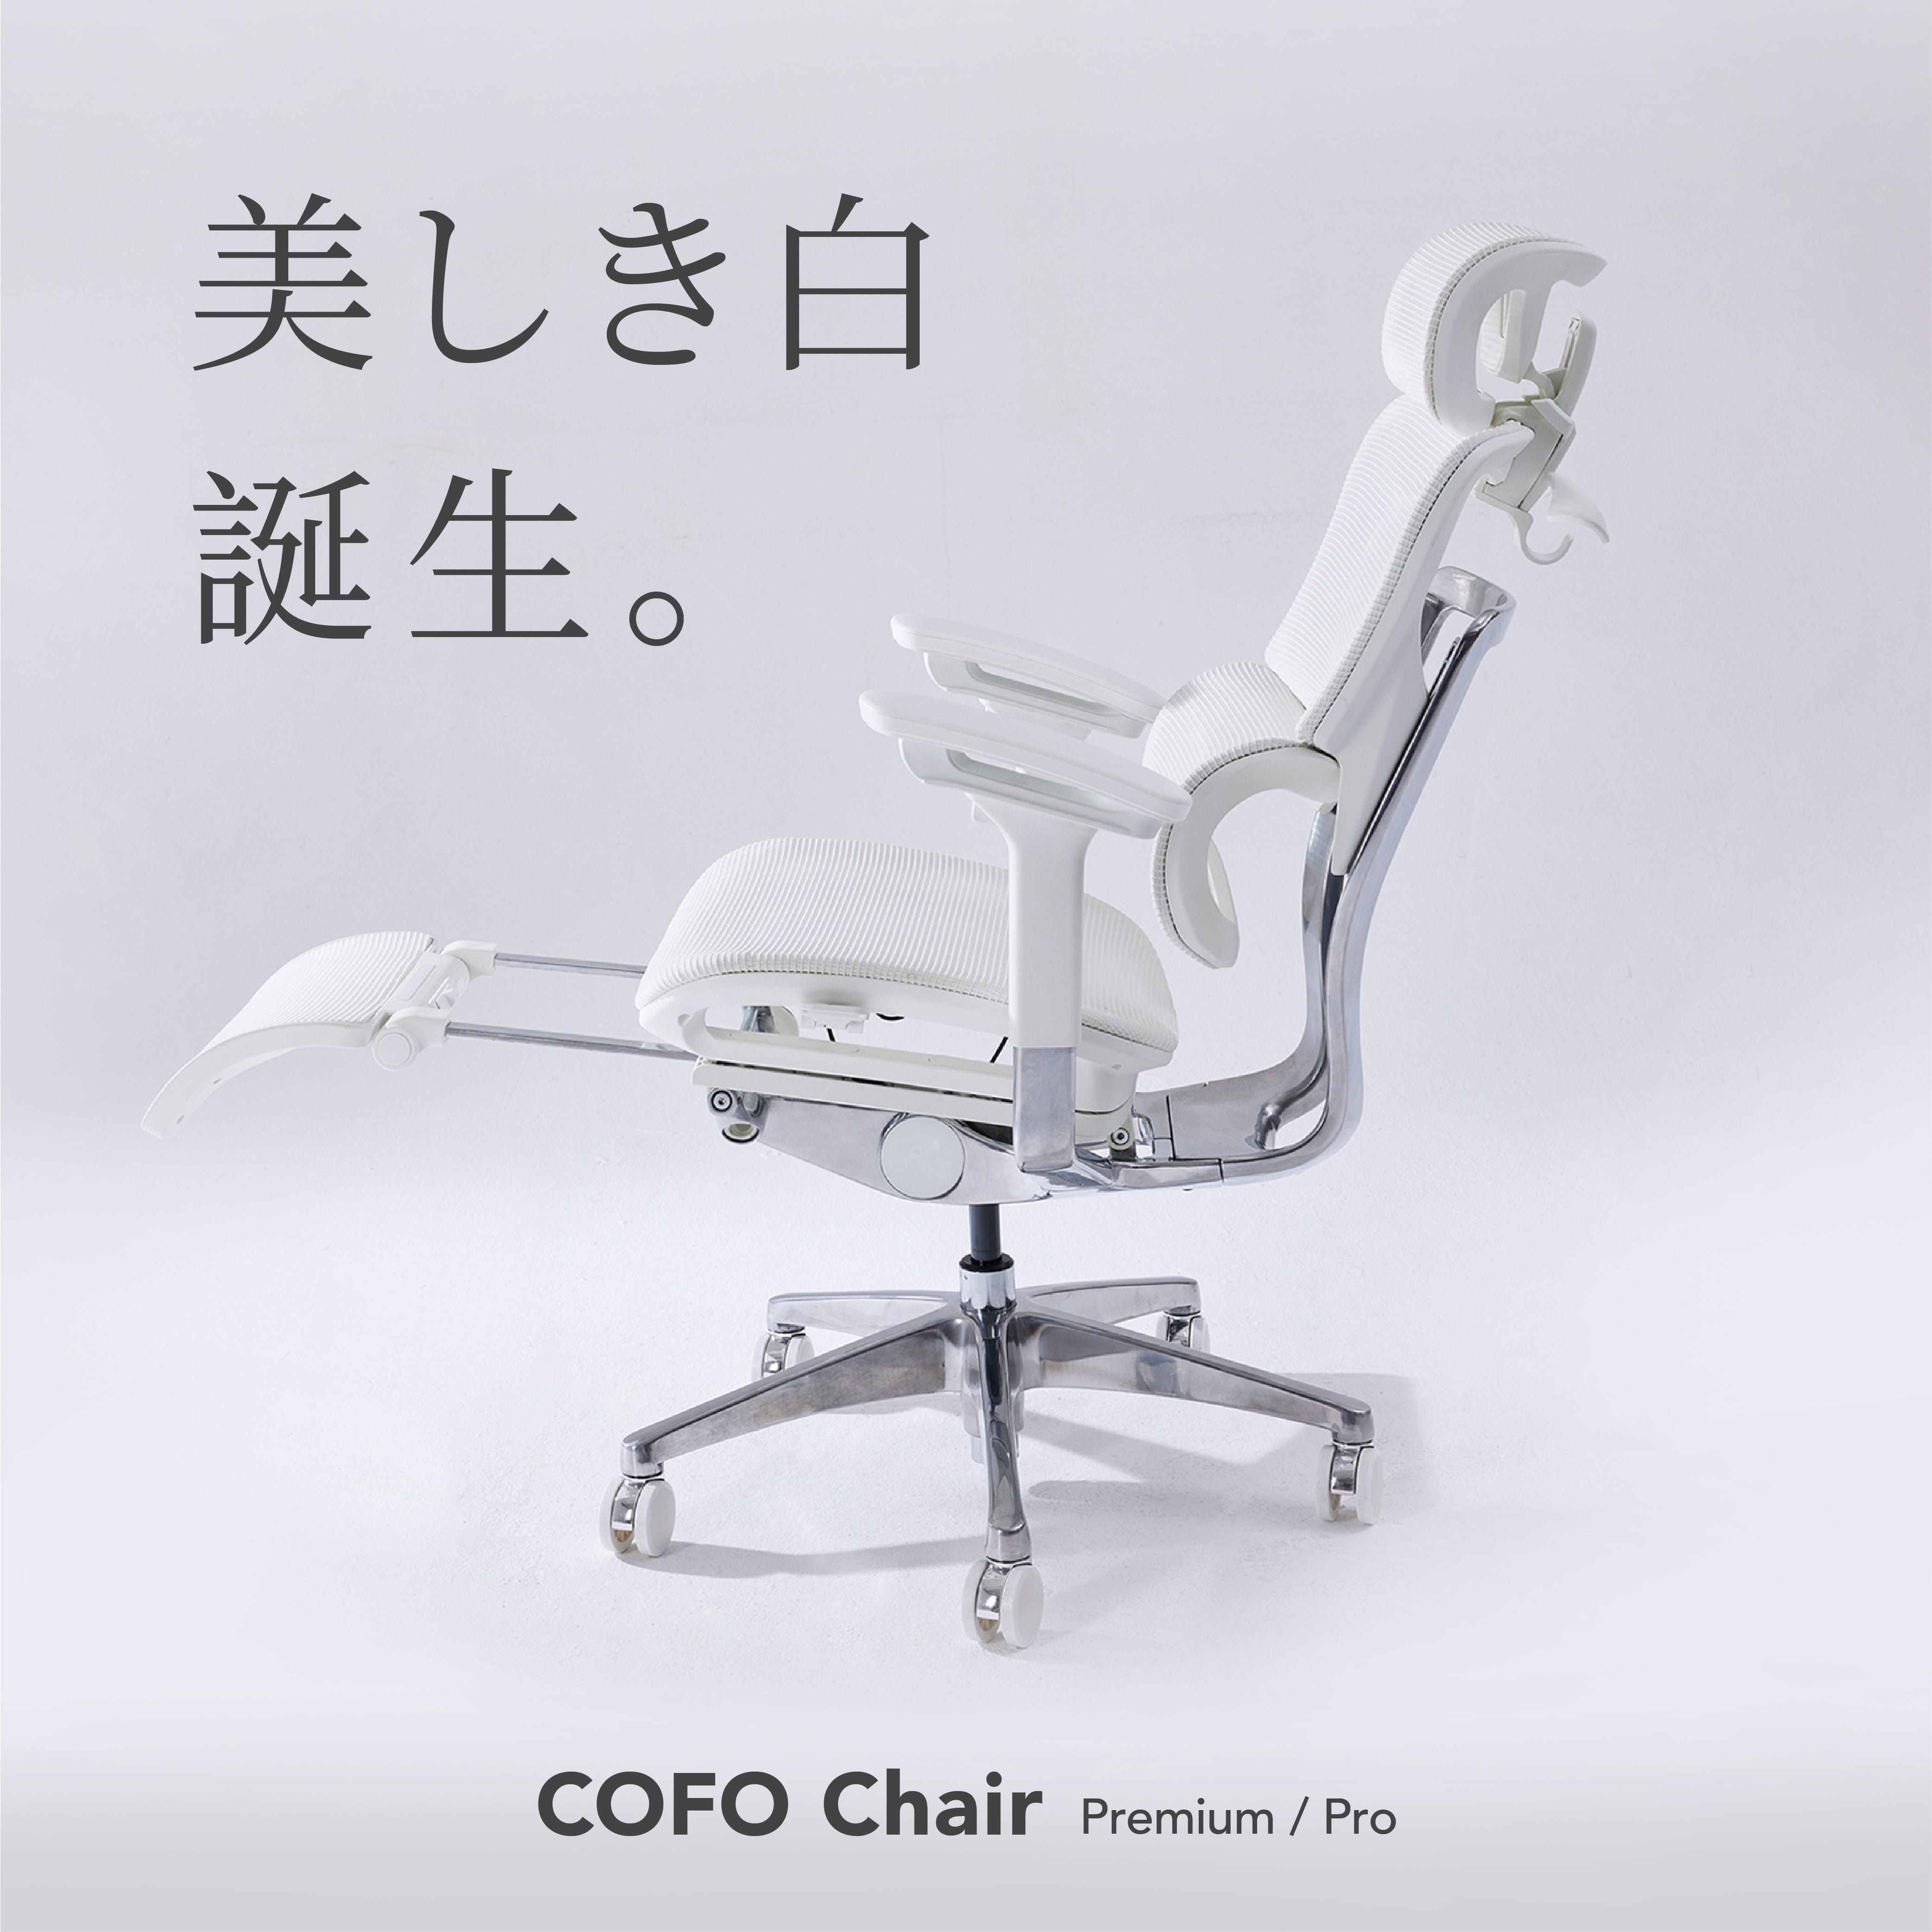 COFO Chair Premium 「ブラック」重量26kg - デスクチェア